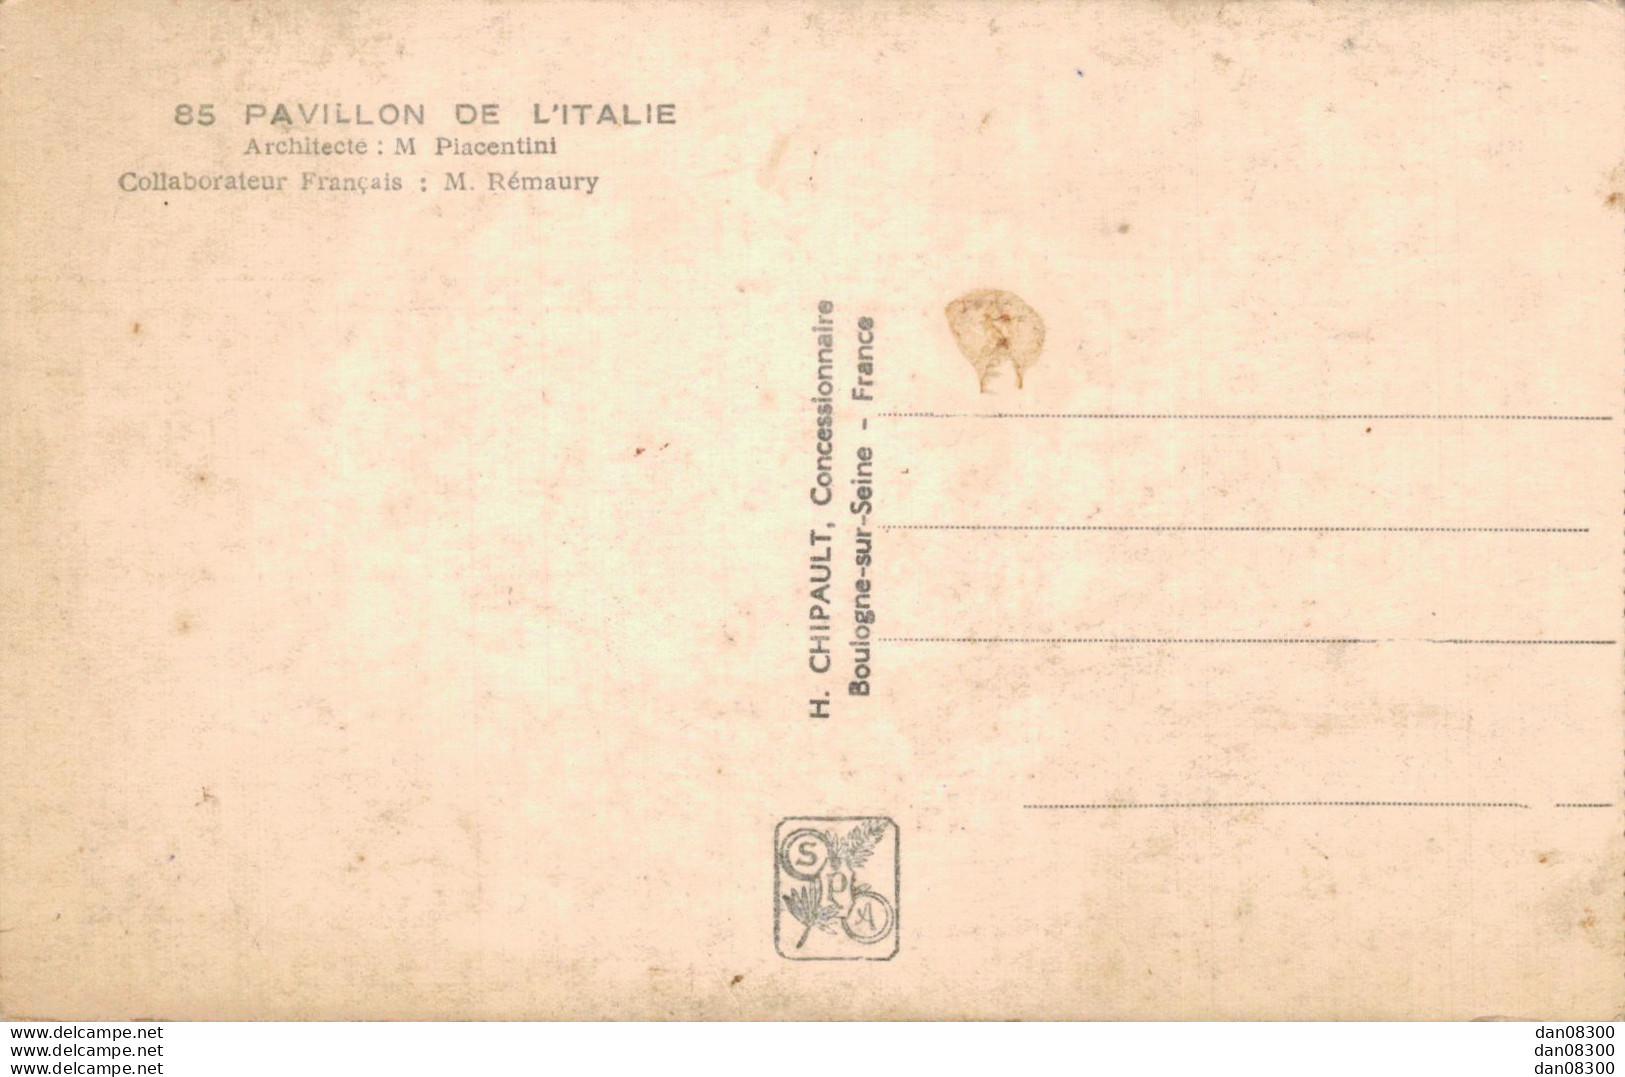 75 EXPOSITION INTERNATIONALE PARIS 1937 PAVILLON DE L'ITALIE - Exhibitions